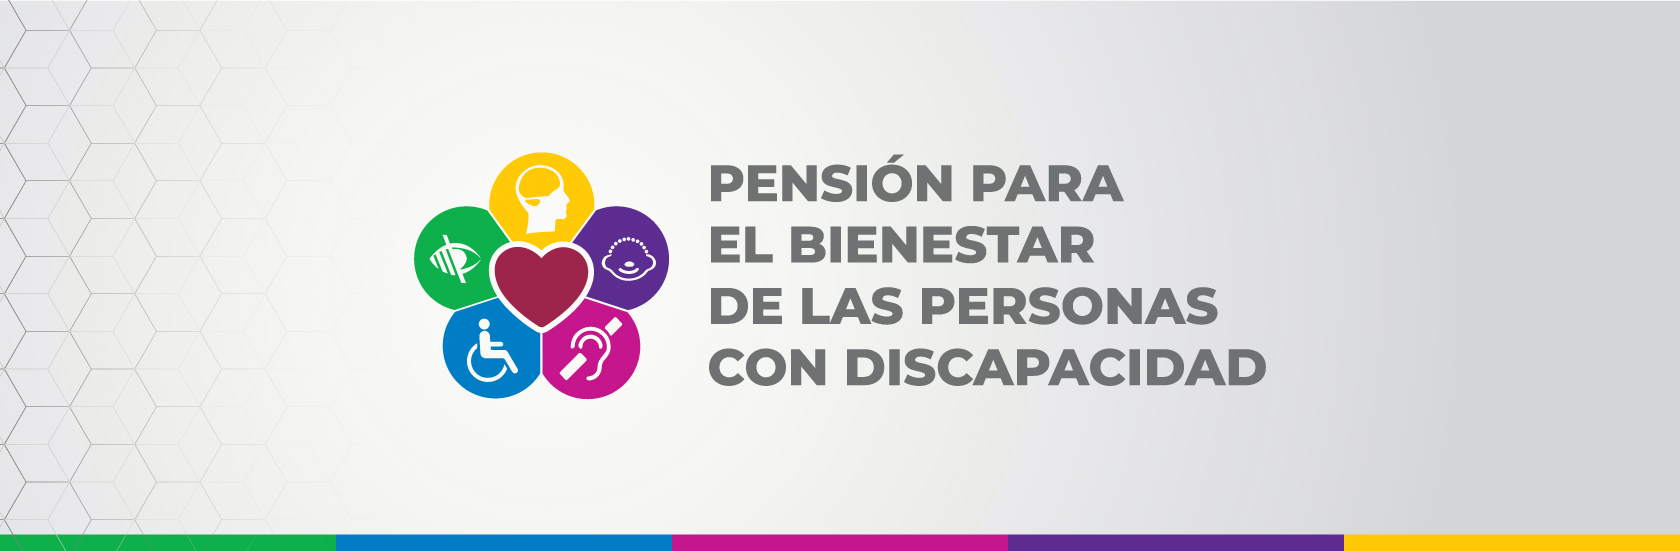 Pensión para Personas con Discapacidad | Campaña | gob.mx